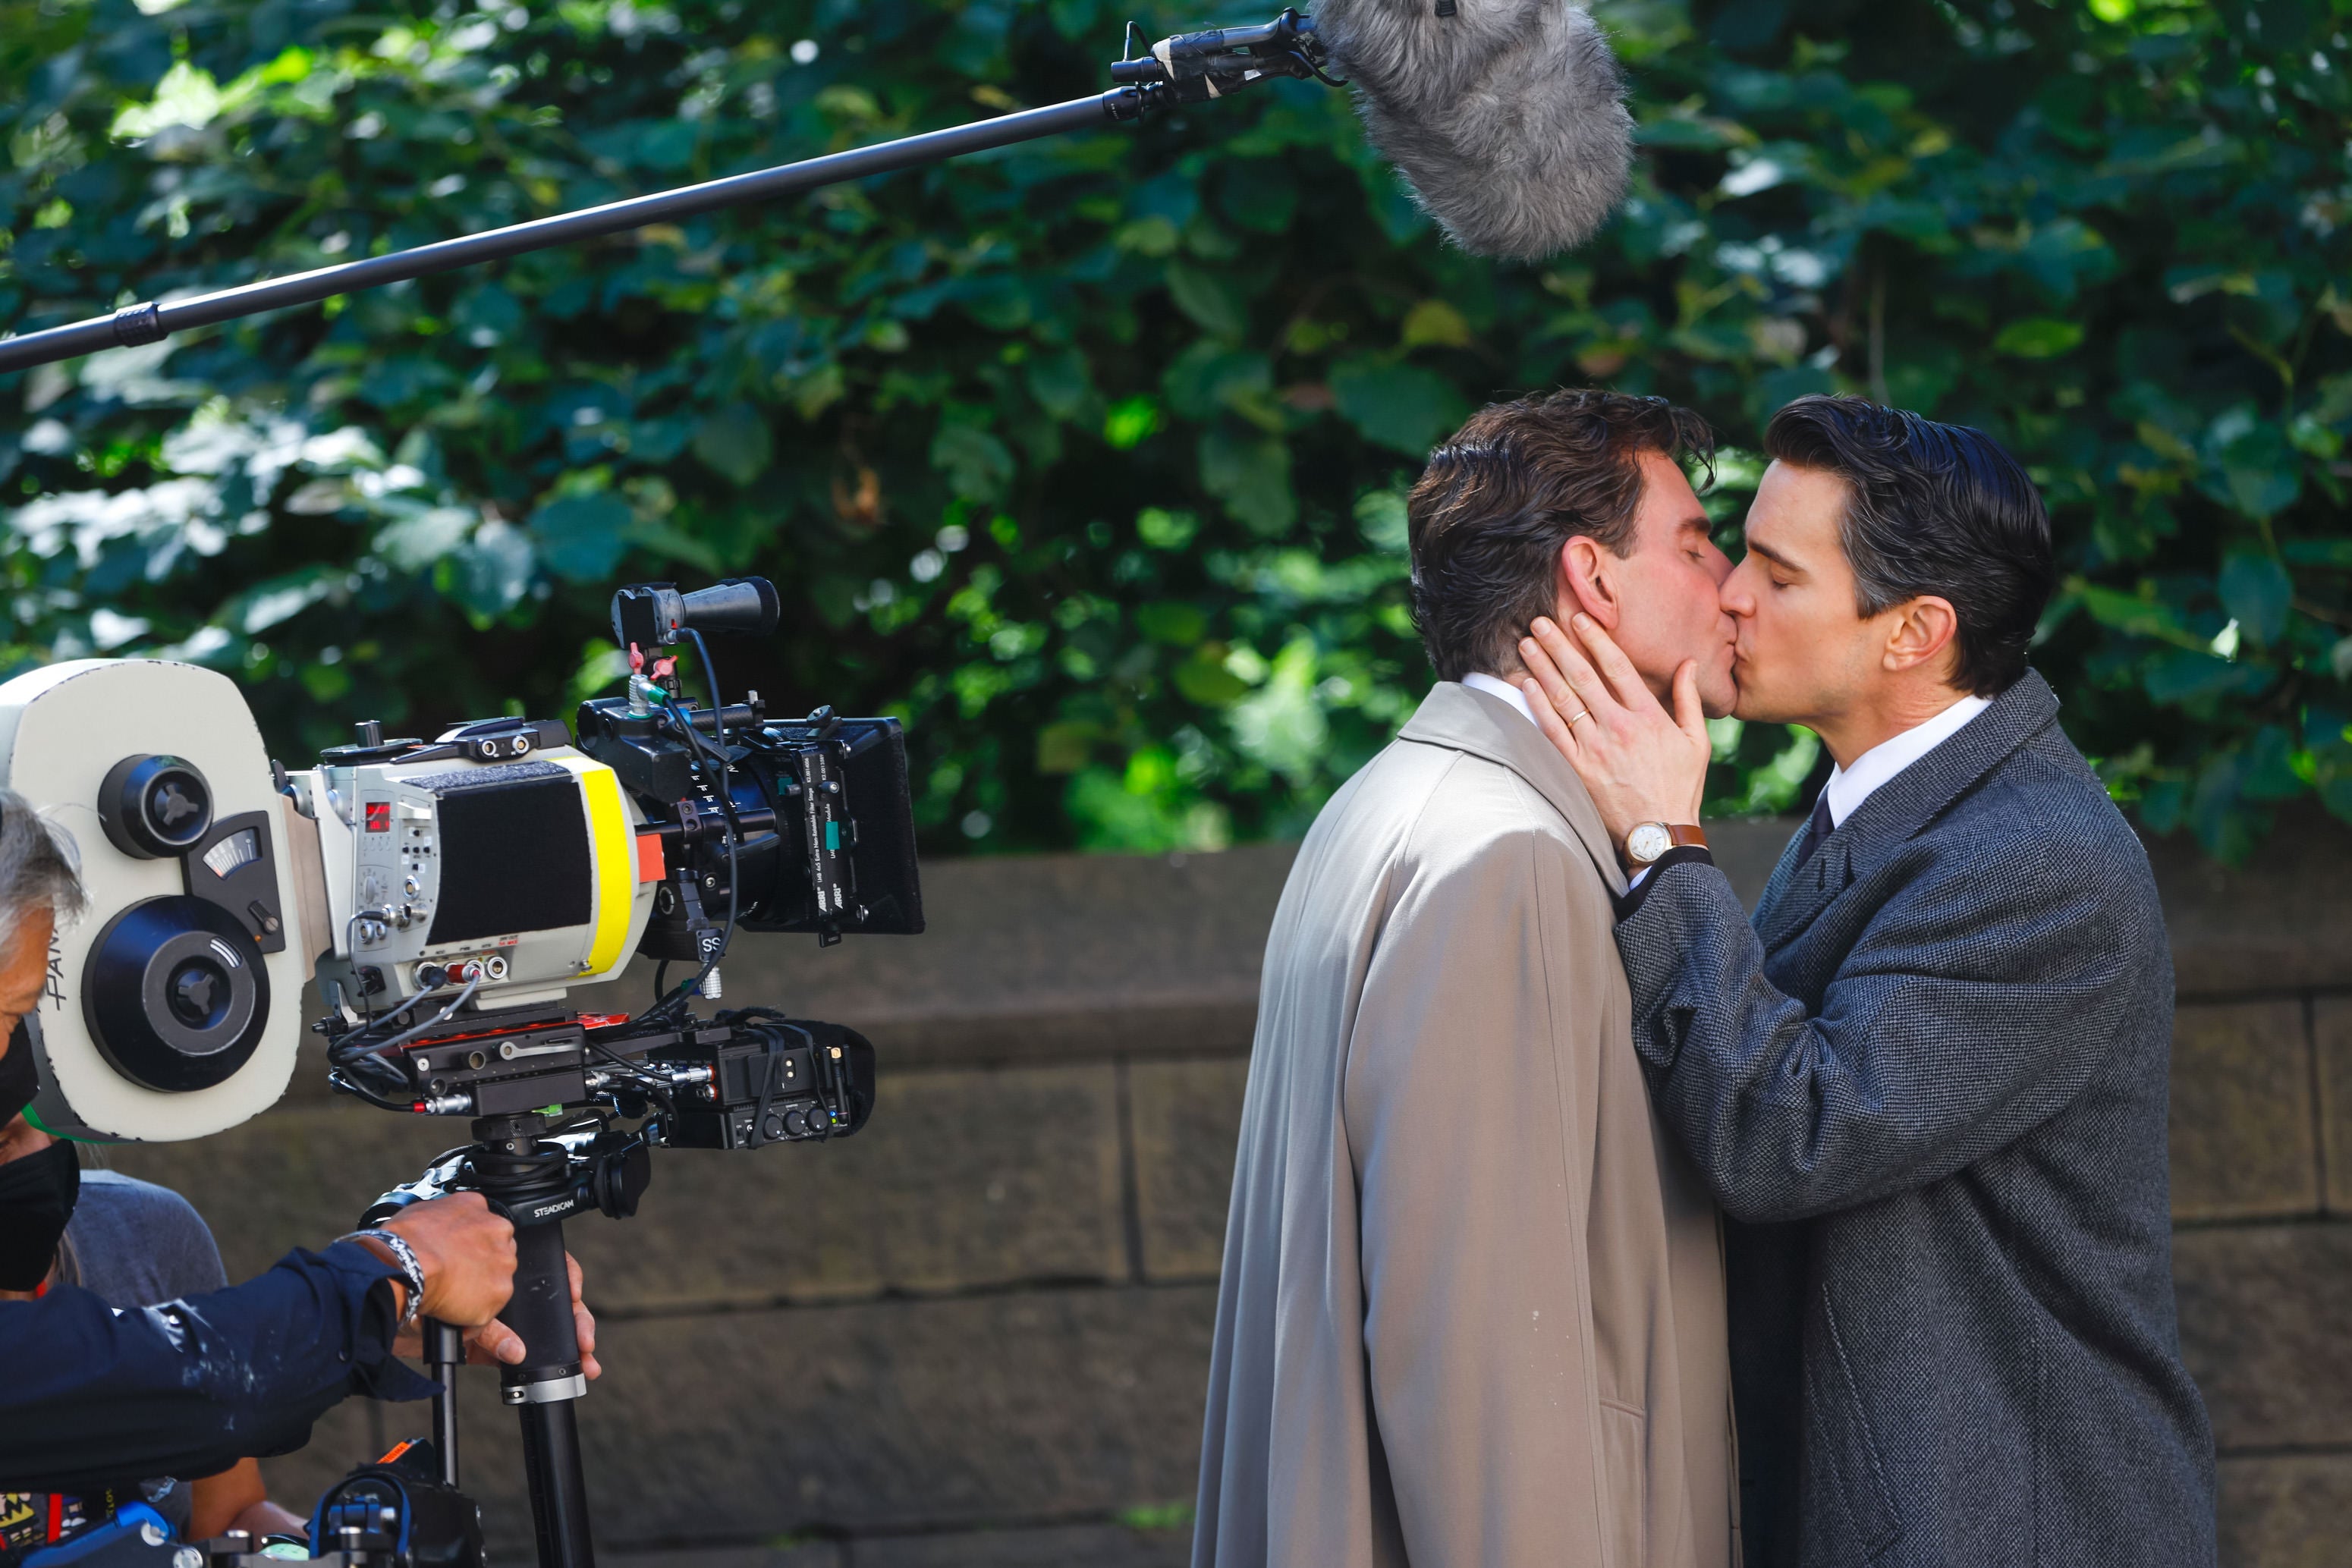 Bradley Cooper, Matt Bomer Kiss on 'Maestro' Set